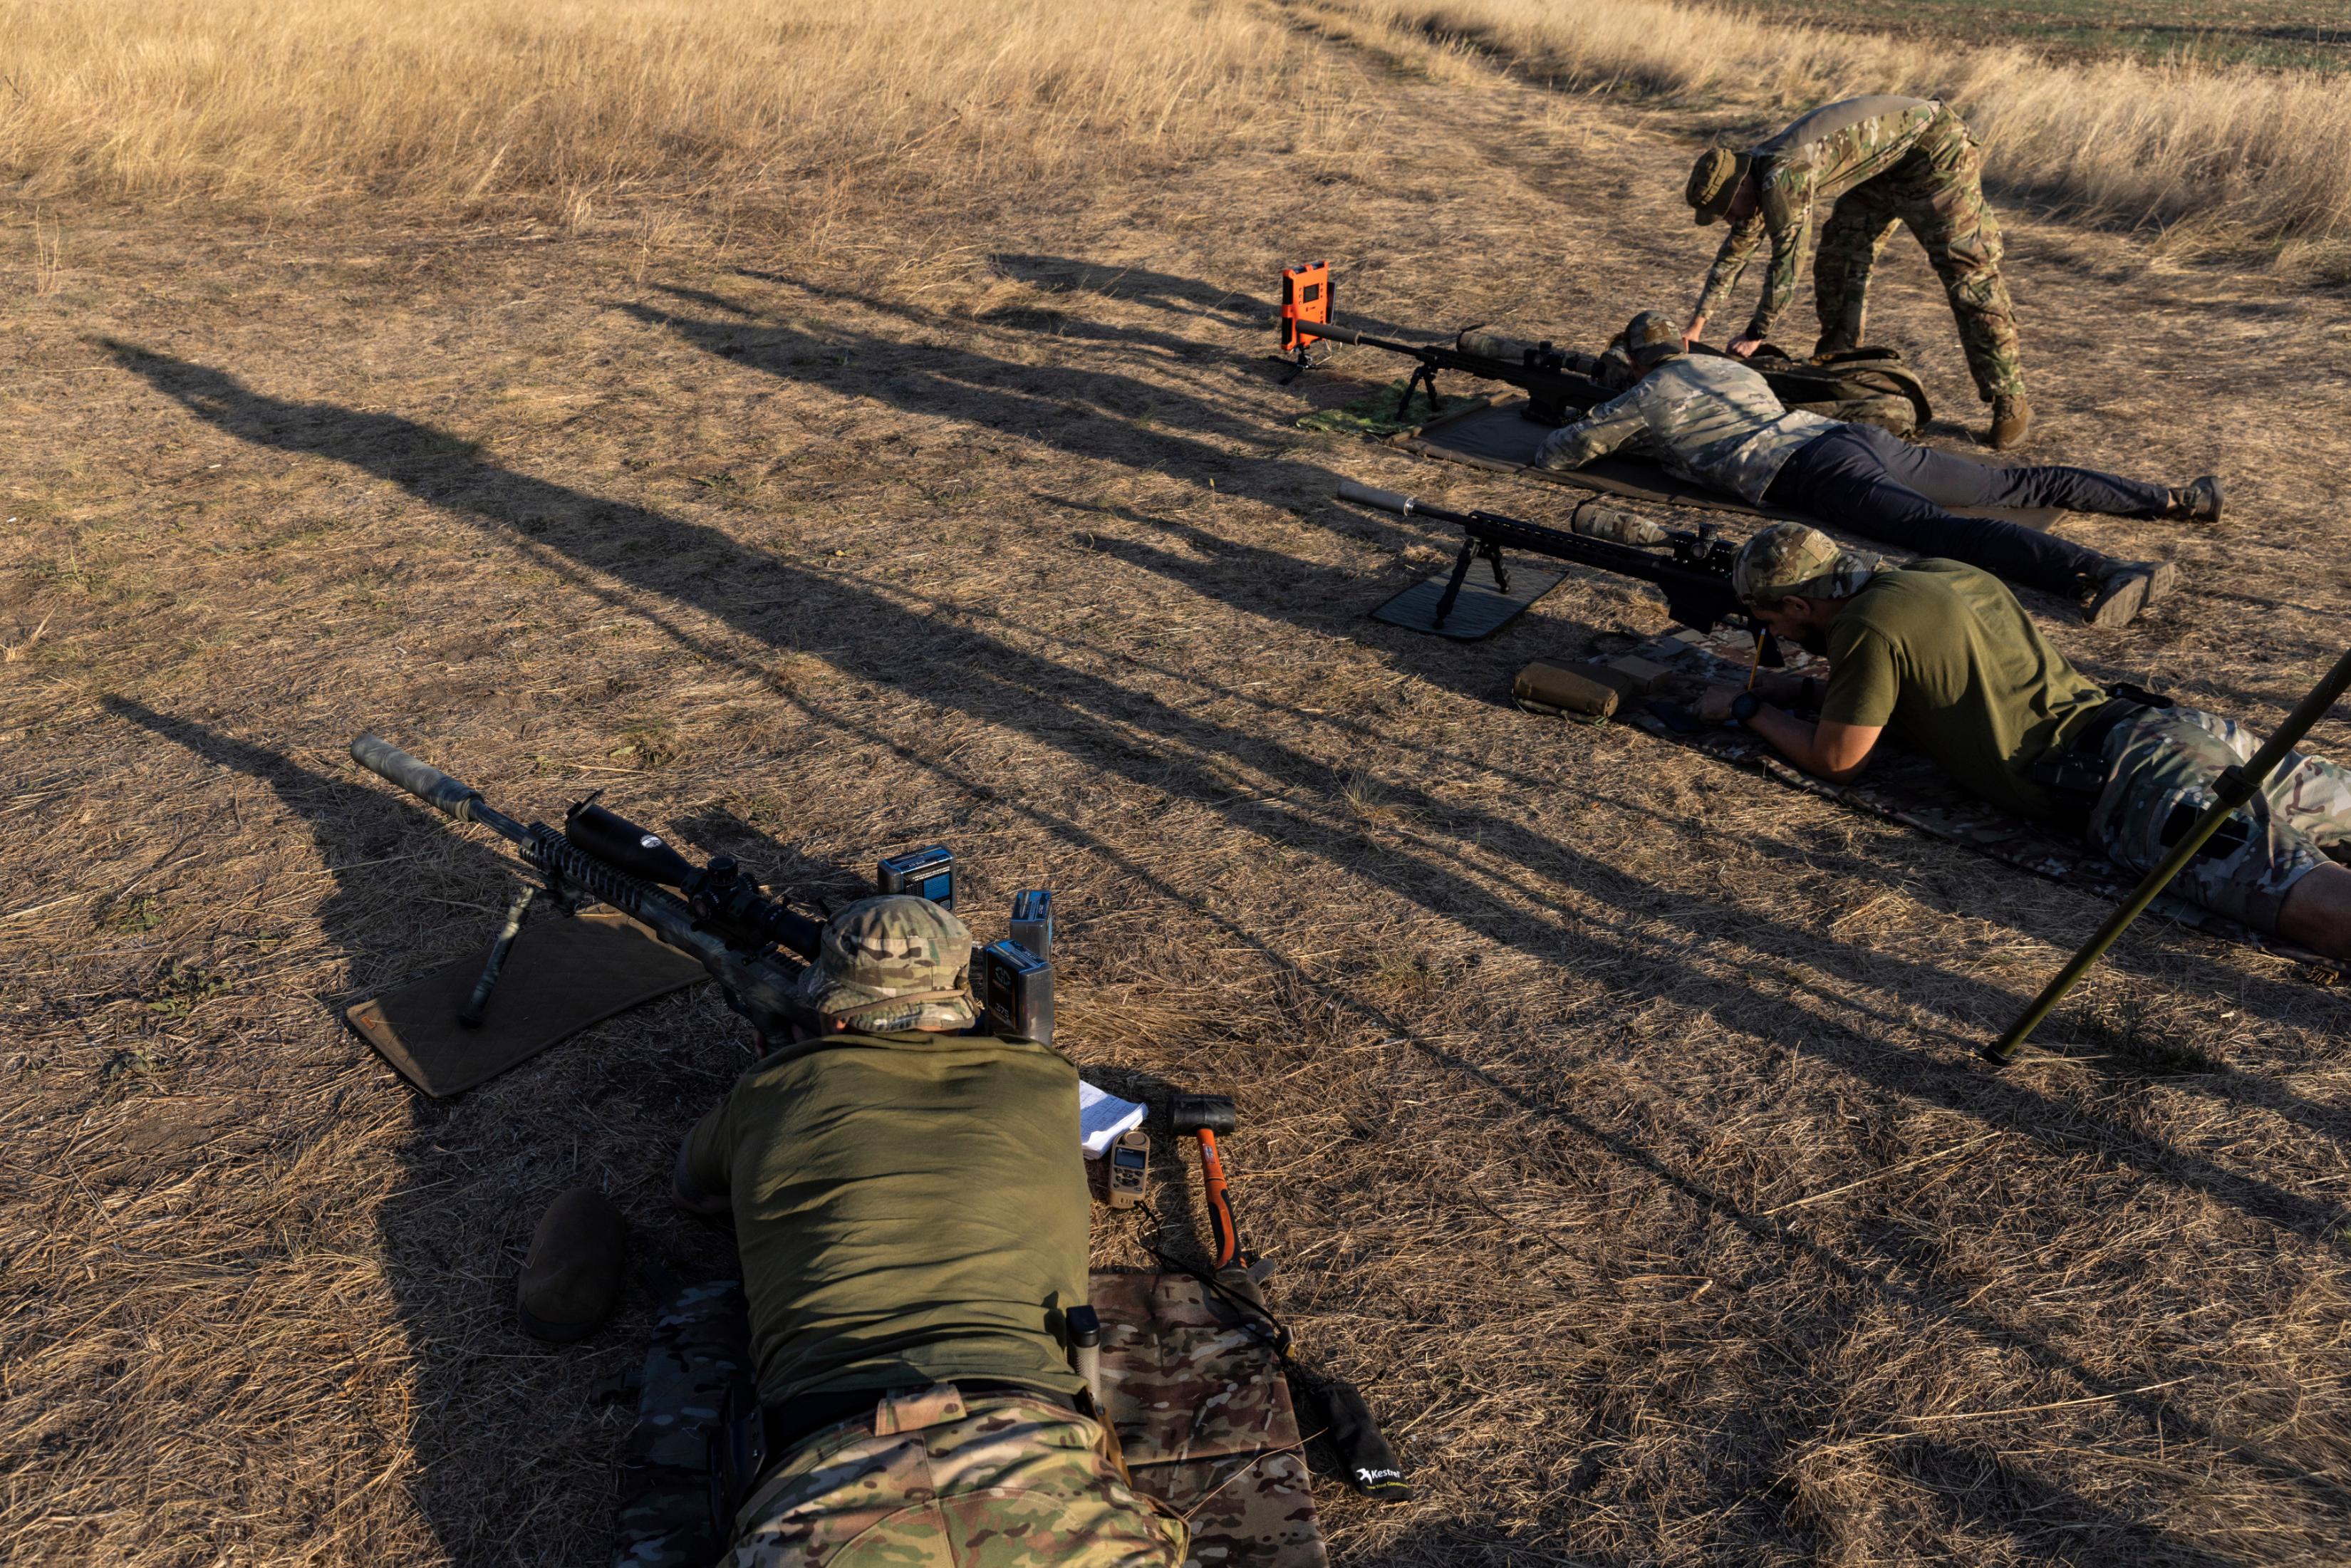 Encontre o sniper': Ucrânia desafia internautas a encontrarem atiradores de  elite camuflados - Fotos - R7 Internacional